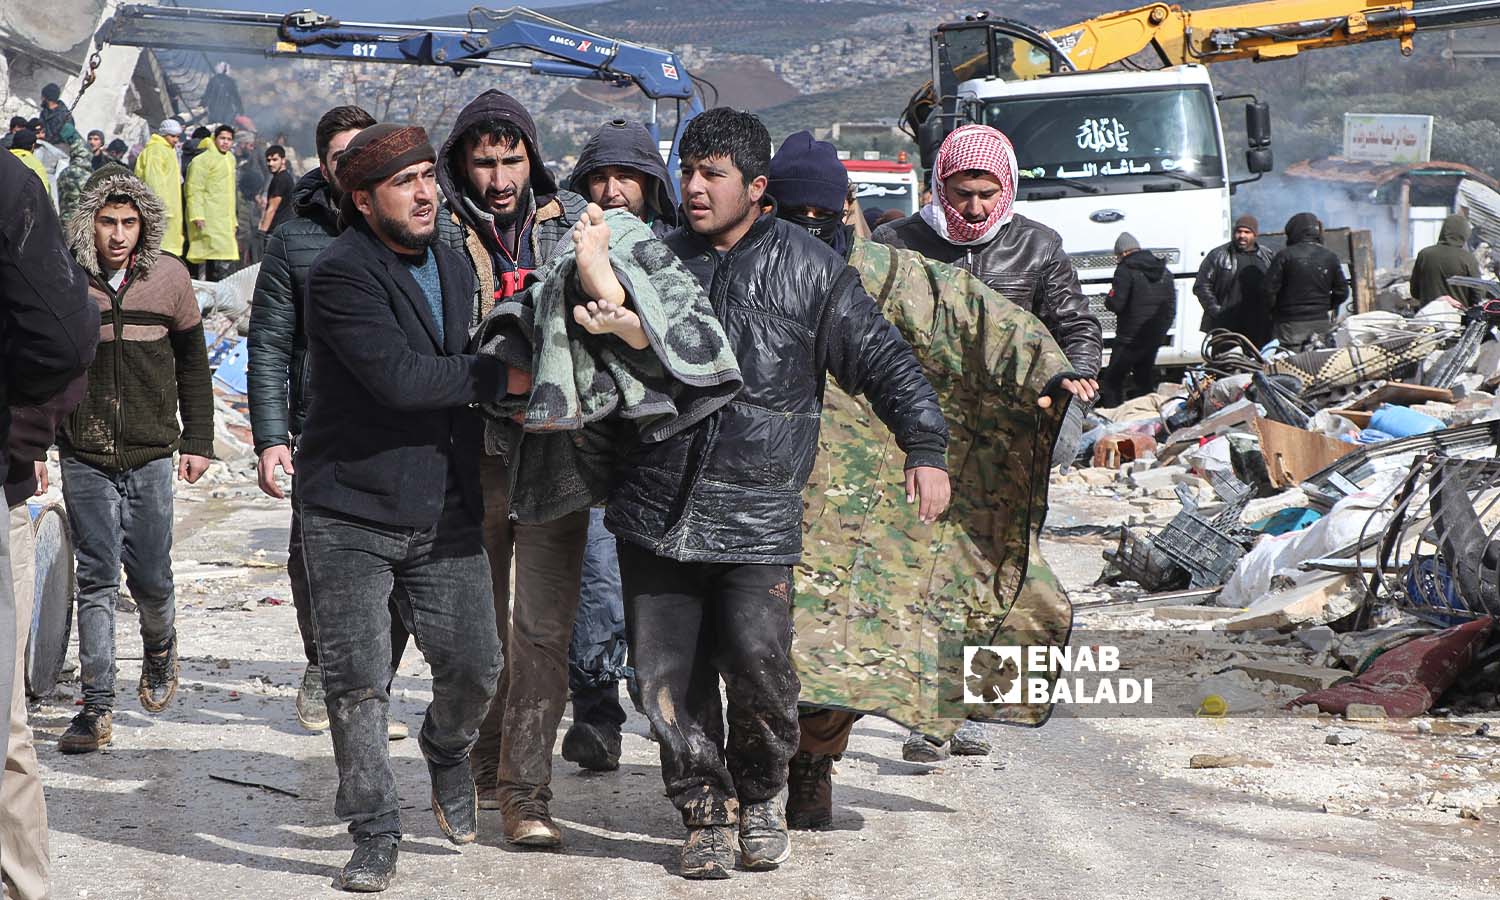 متطوعون في حارم يحملون أحد ضحايا الزلزال الذي ضرب مناطق شمال غربي سوريا - - 6 شباط 2023 (عنب بلدي/ محمد نعسان دبل)